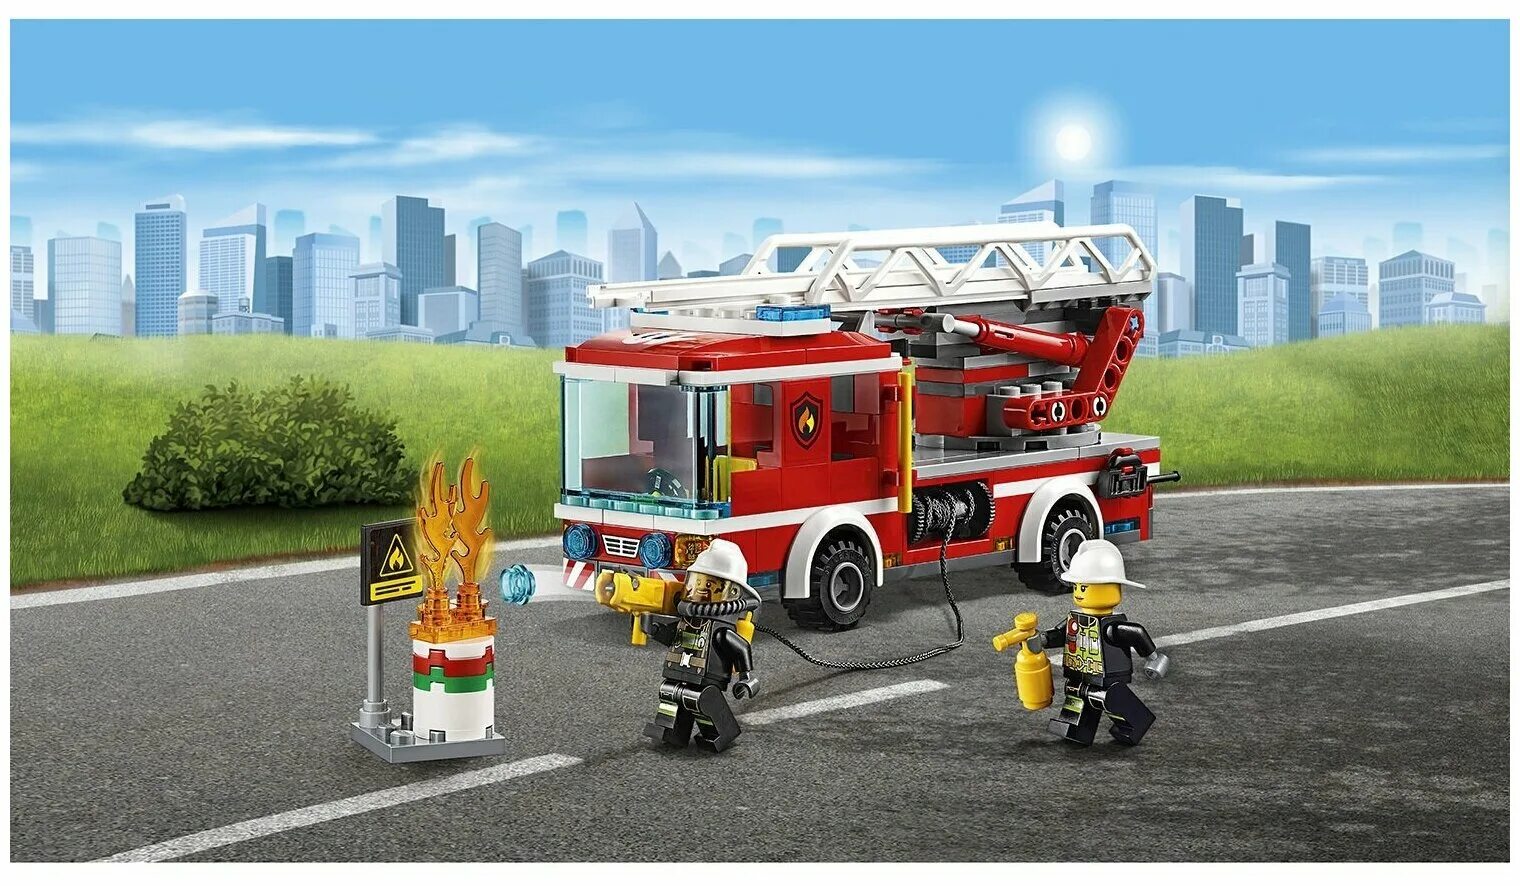 LEGO пожарная машина 60107. Лего City 60107. LEGO City 60107 пожарный автомобиль с лестницей конструктор. Лего Сити пожарная машина 60107. Сити пожарная